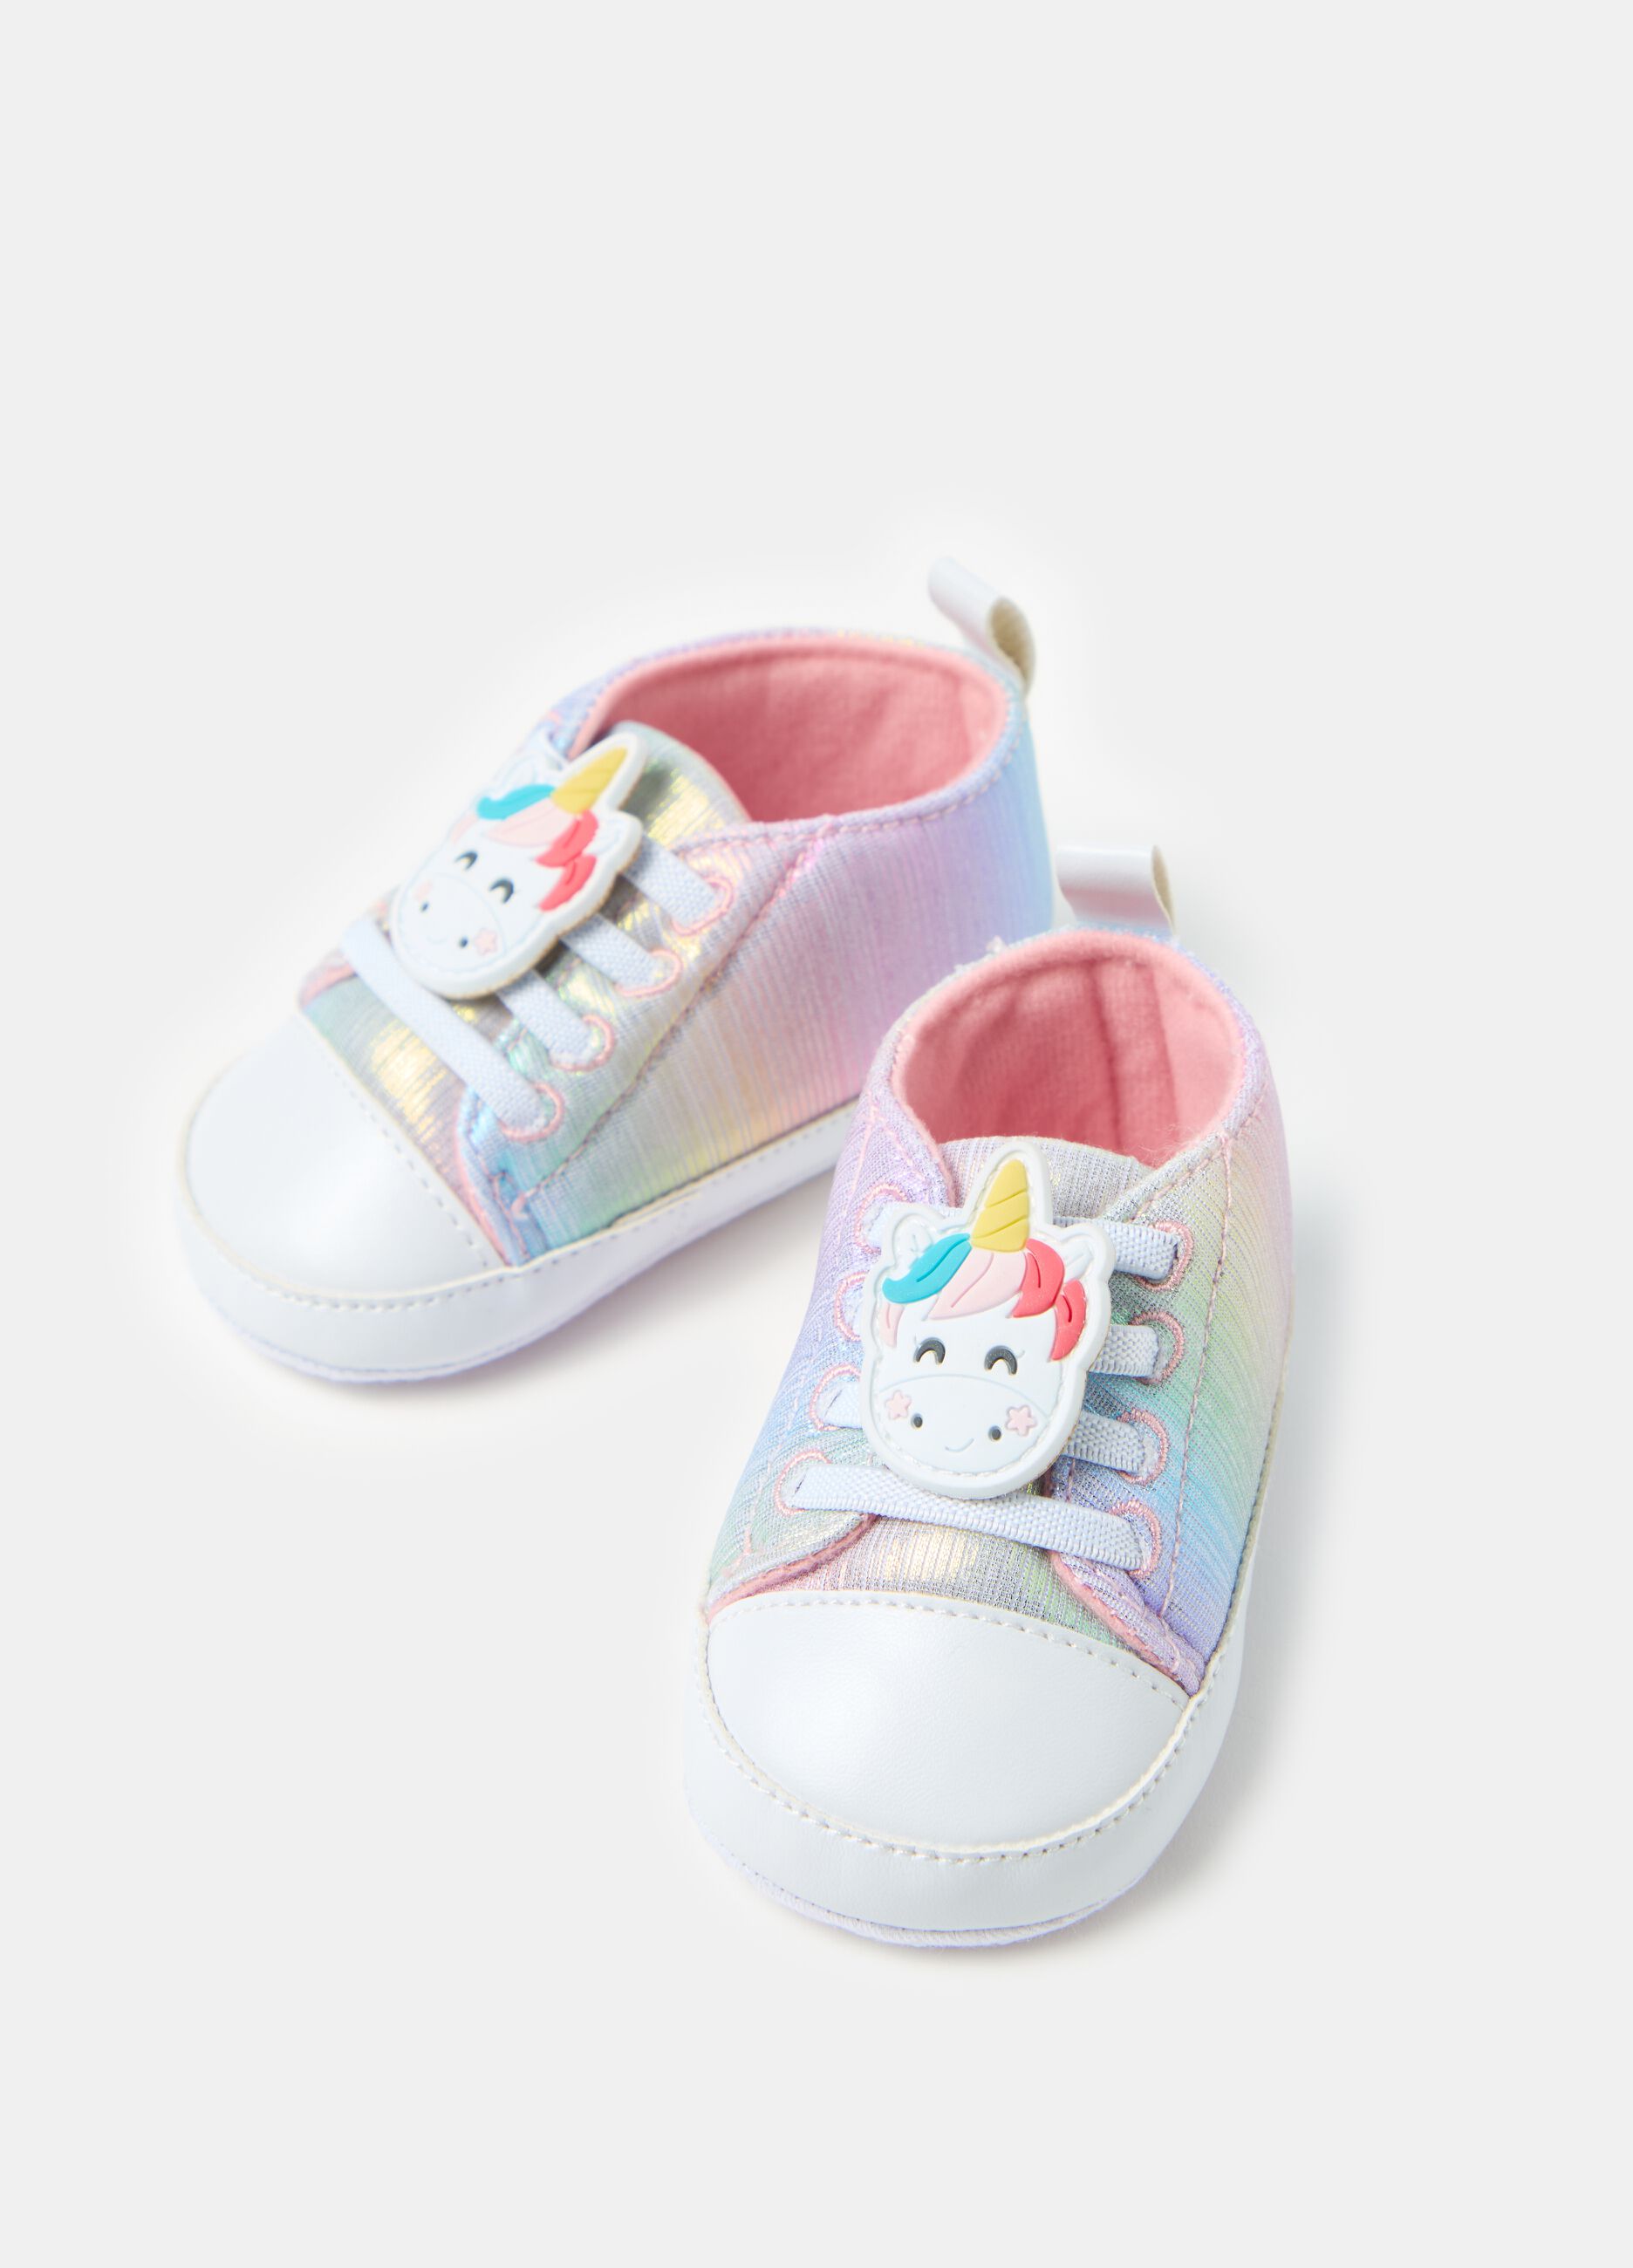 Rainbow sneakers with unicorn